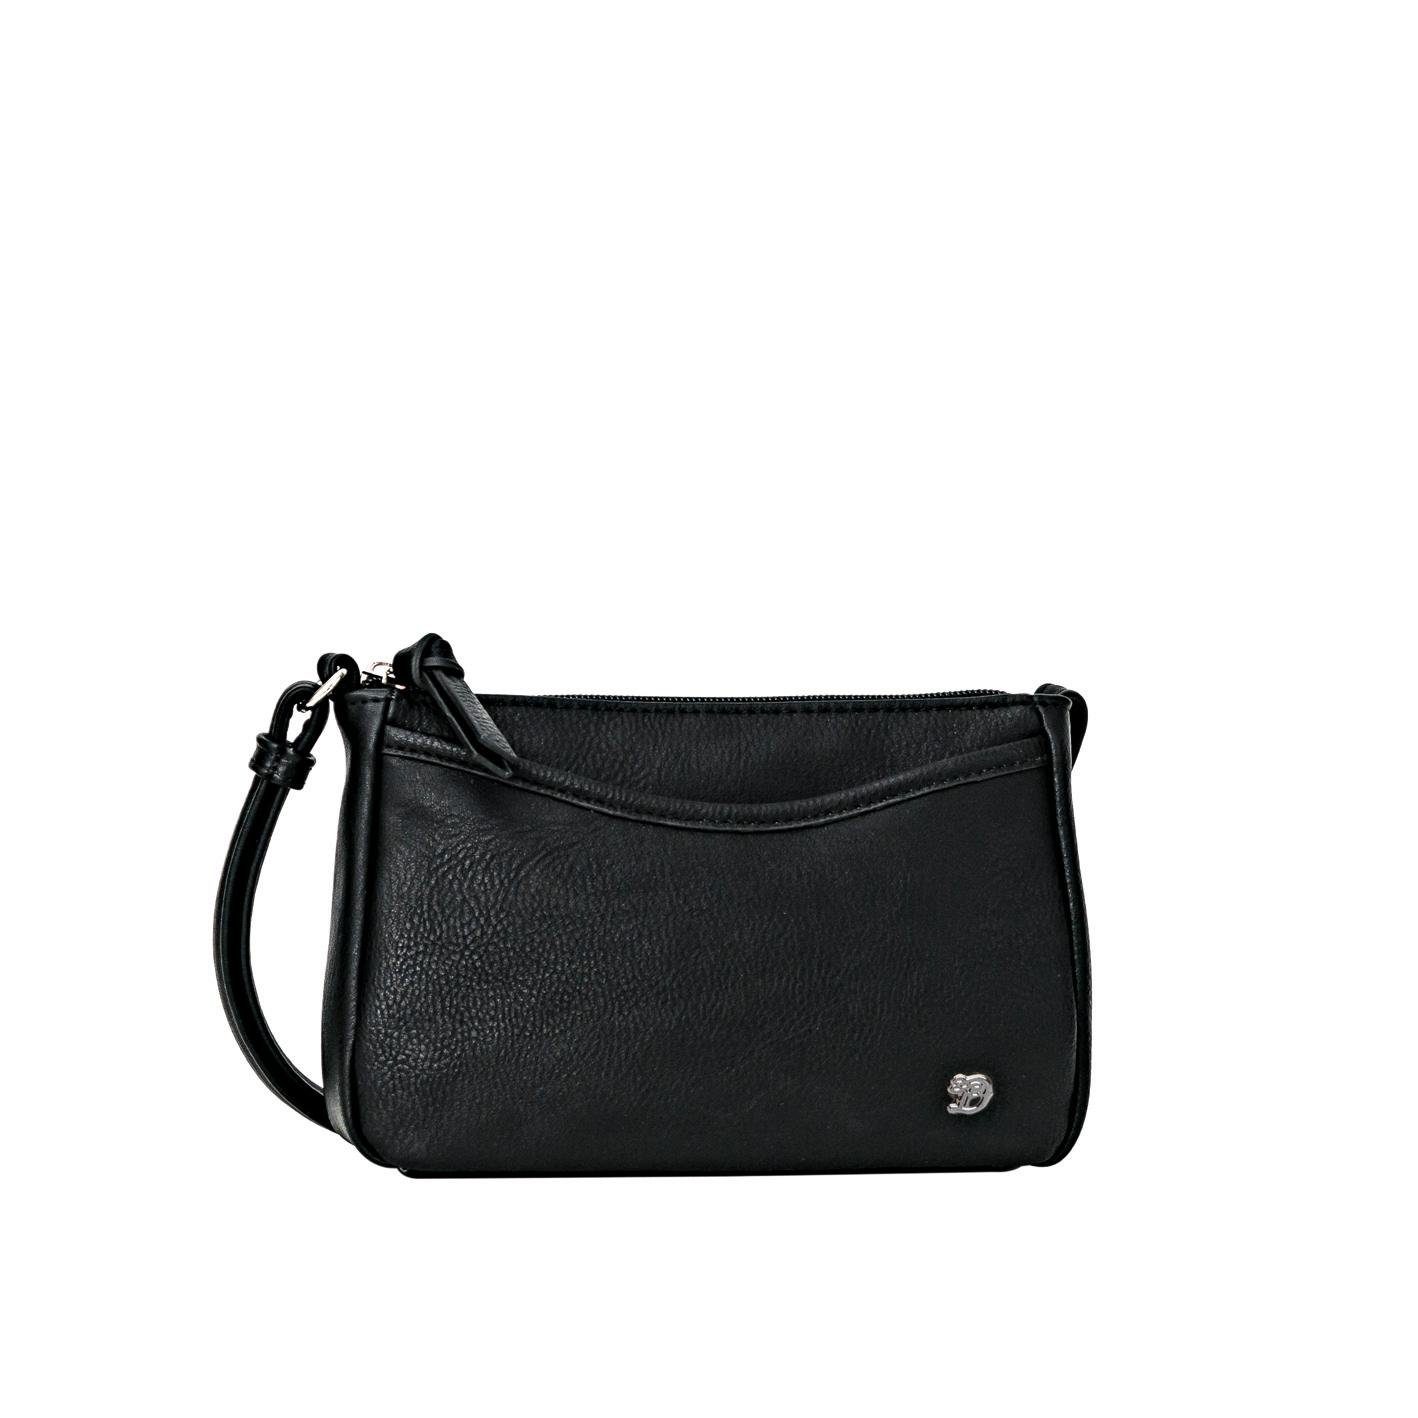 Handtasche in schwarz online kaufen | OTTO